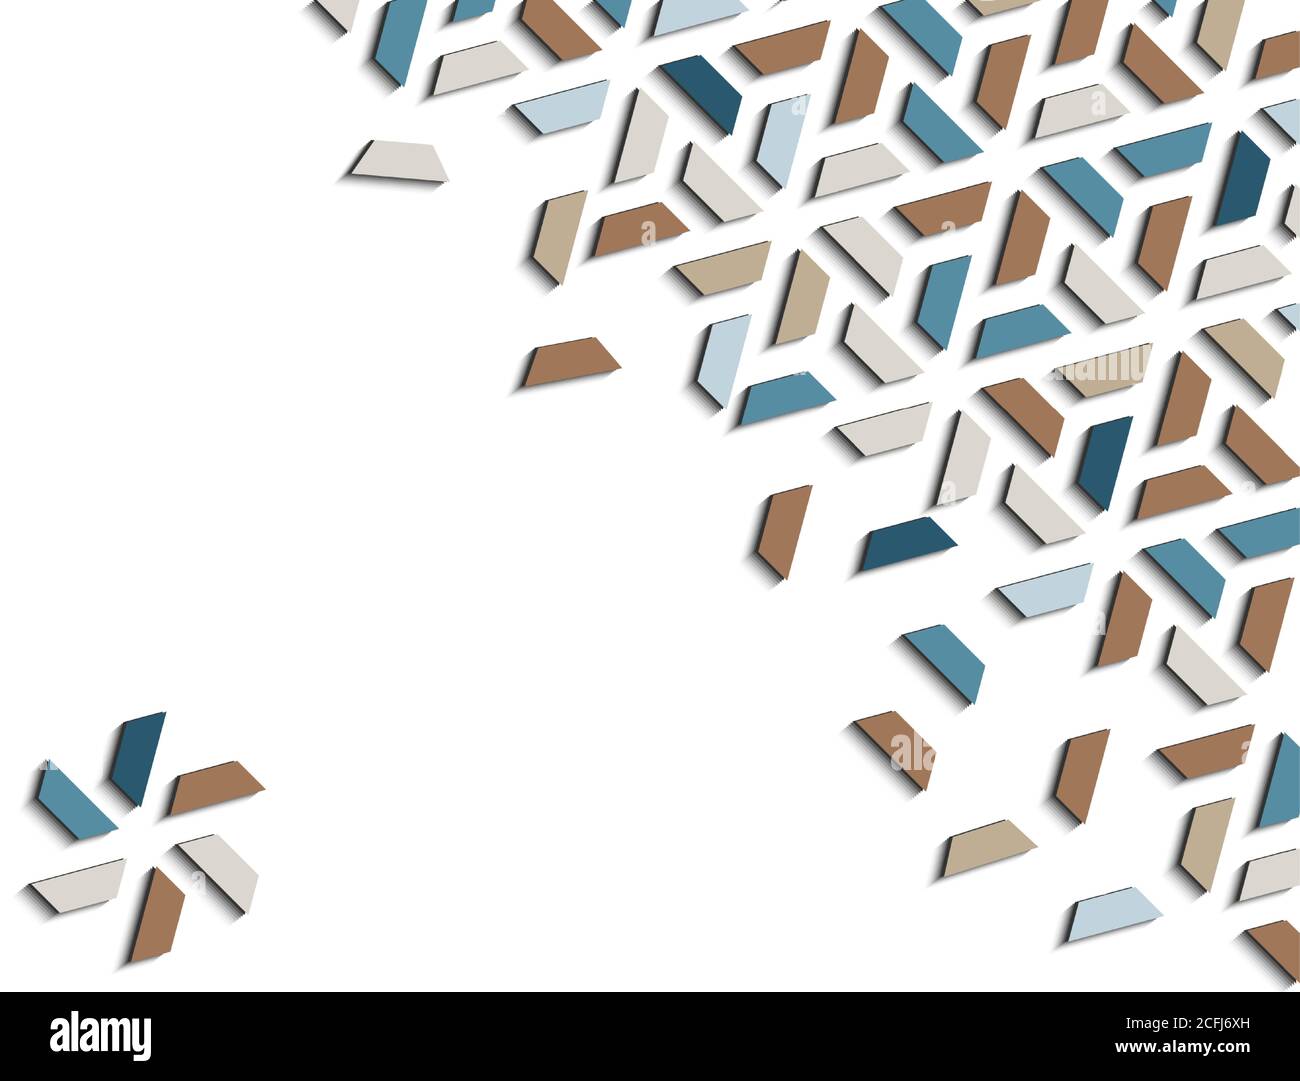 Arabisch 3d isometrische Farbe geometrische Mosaik Vektor-Muster für Hintergrund, Karte, Banner. Geometrisches, kreatives Design. Stock Vektor